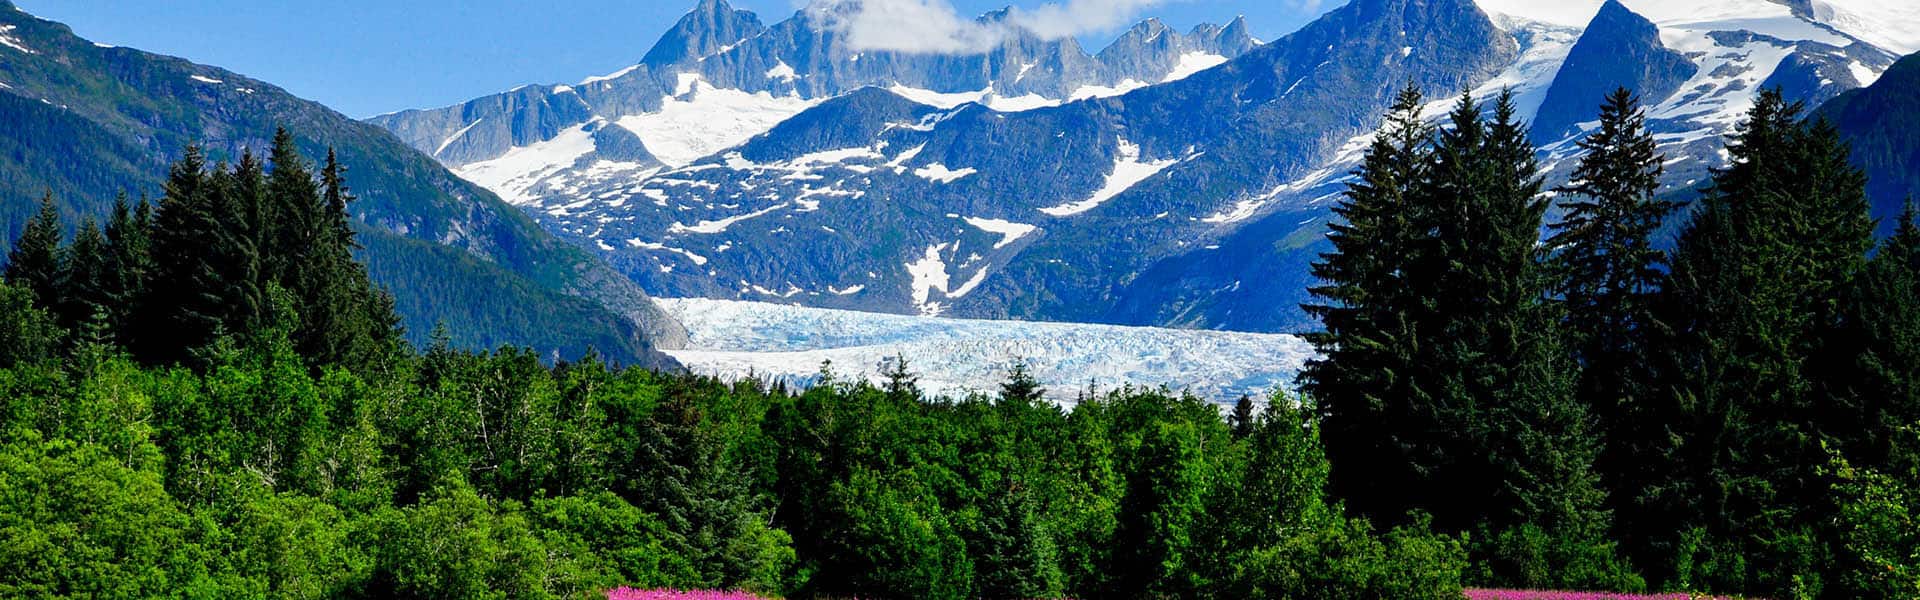 Alaska: Bahía de los Glaciares, Skagway y Juneau